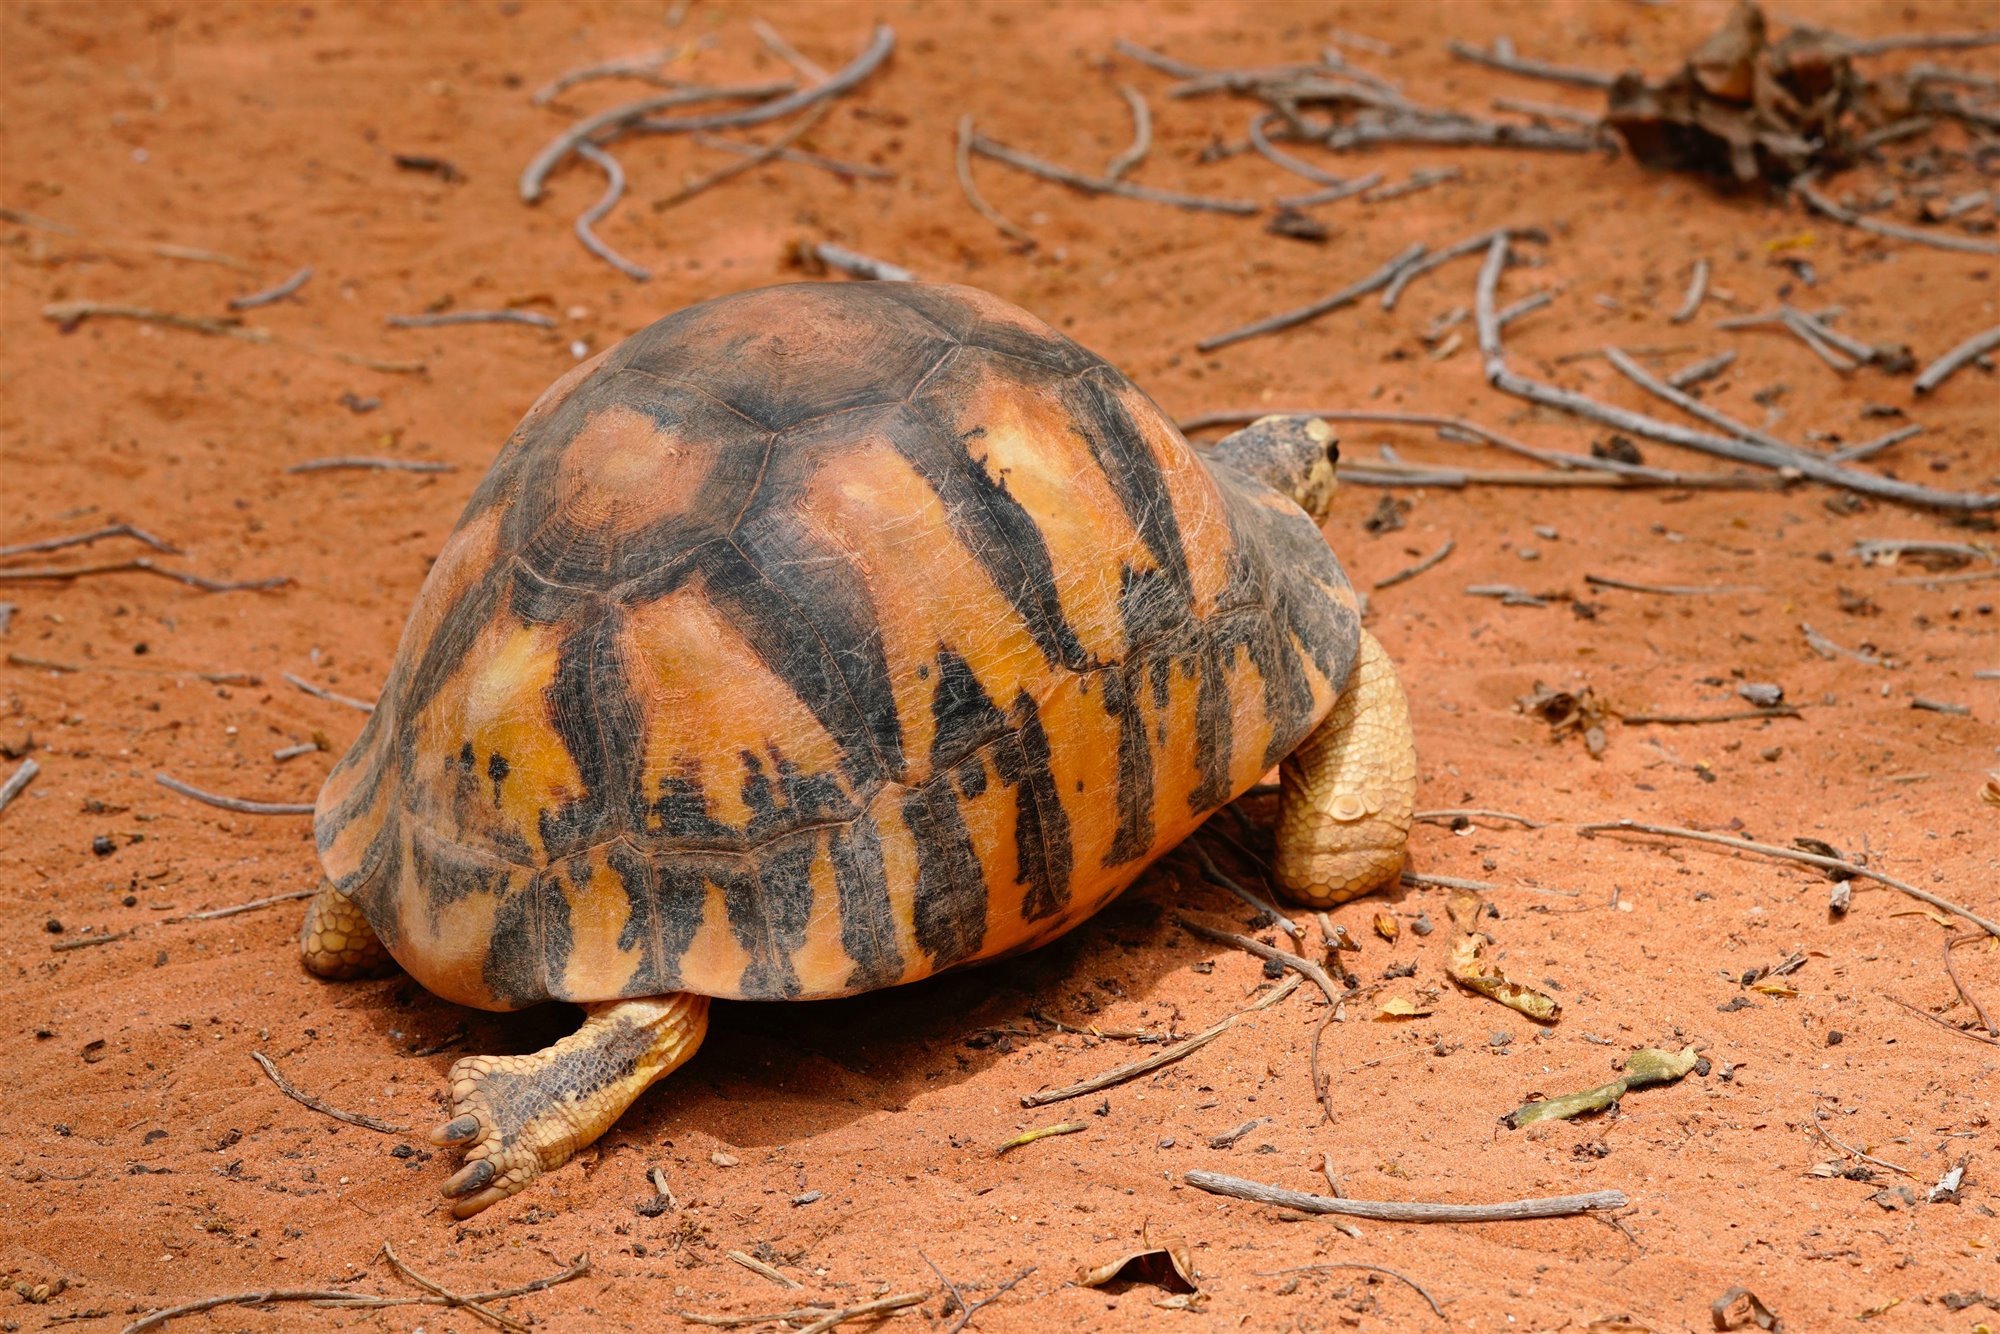 La tortuga radiada y su curioso caparazón